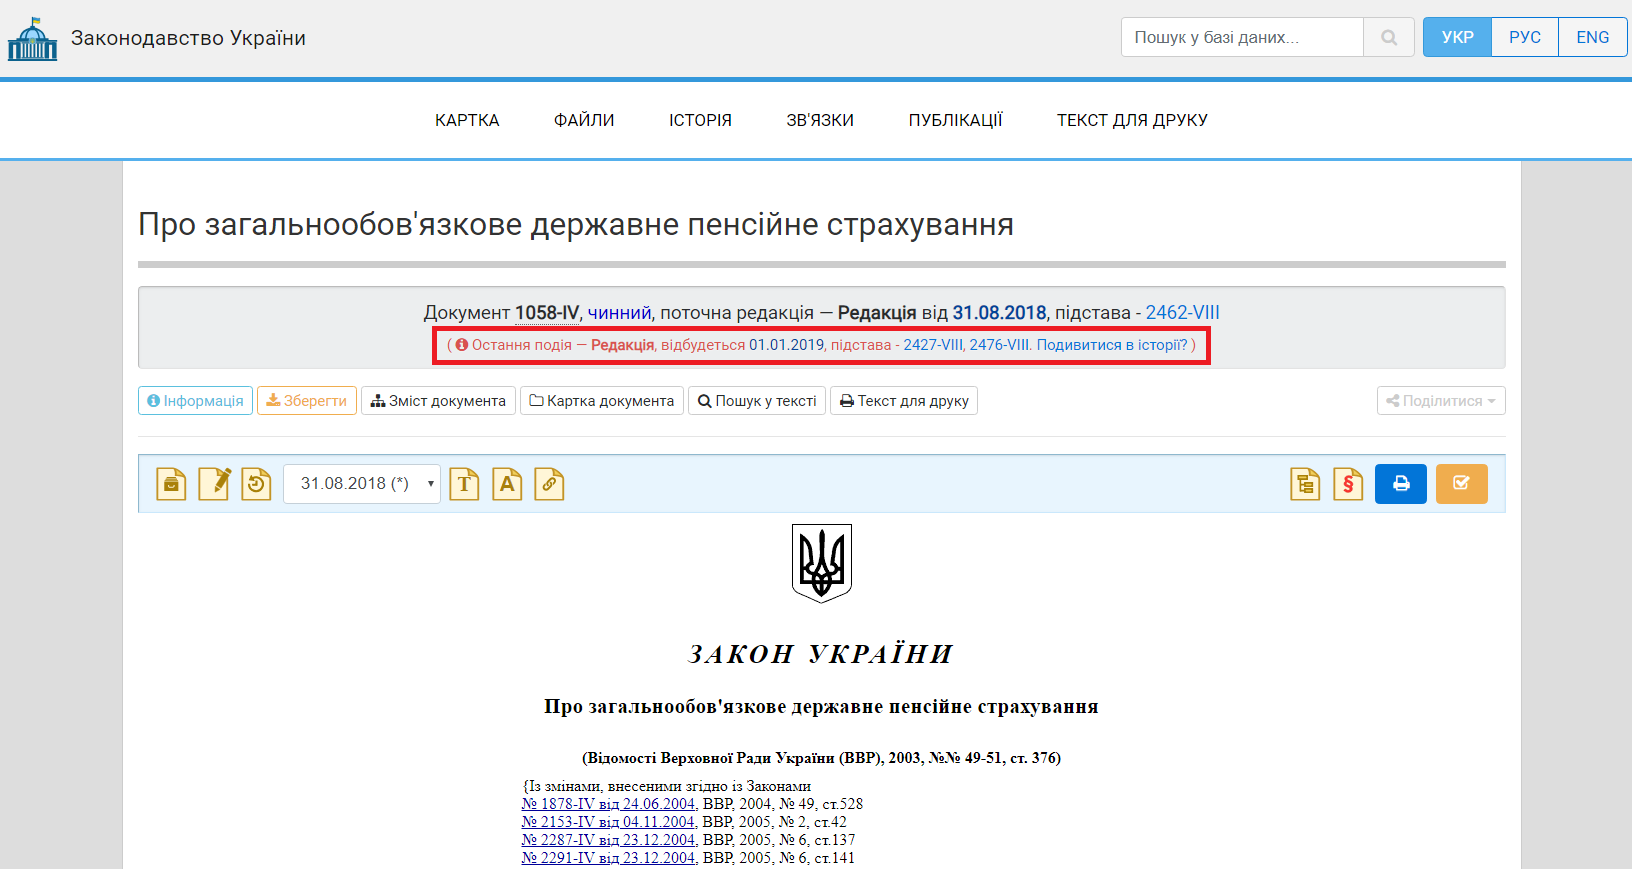 http://zakon.rada.gov.ua/laws/show/1058-15